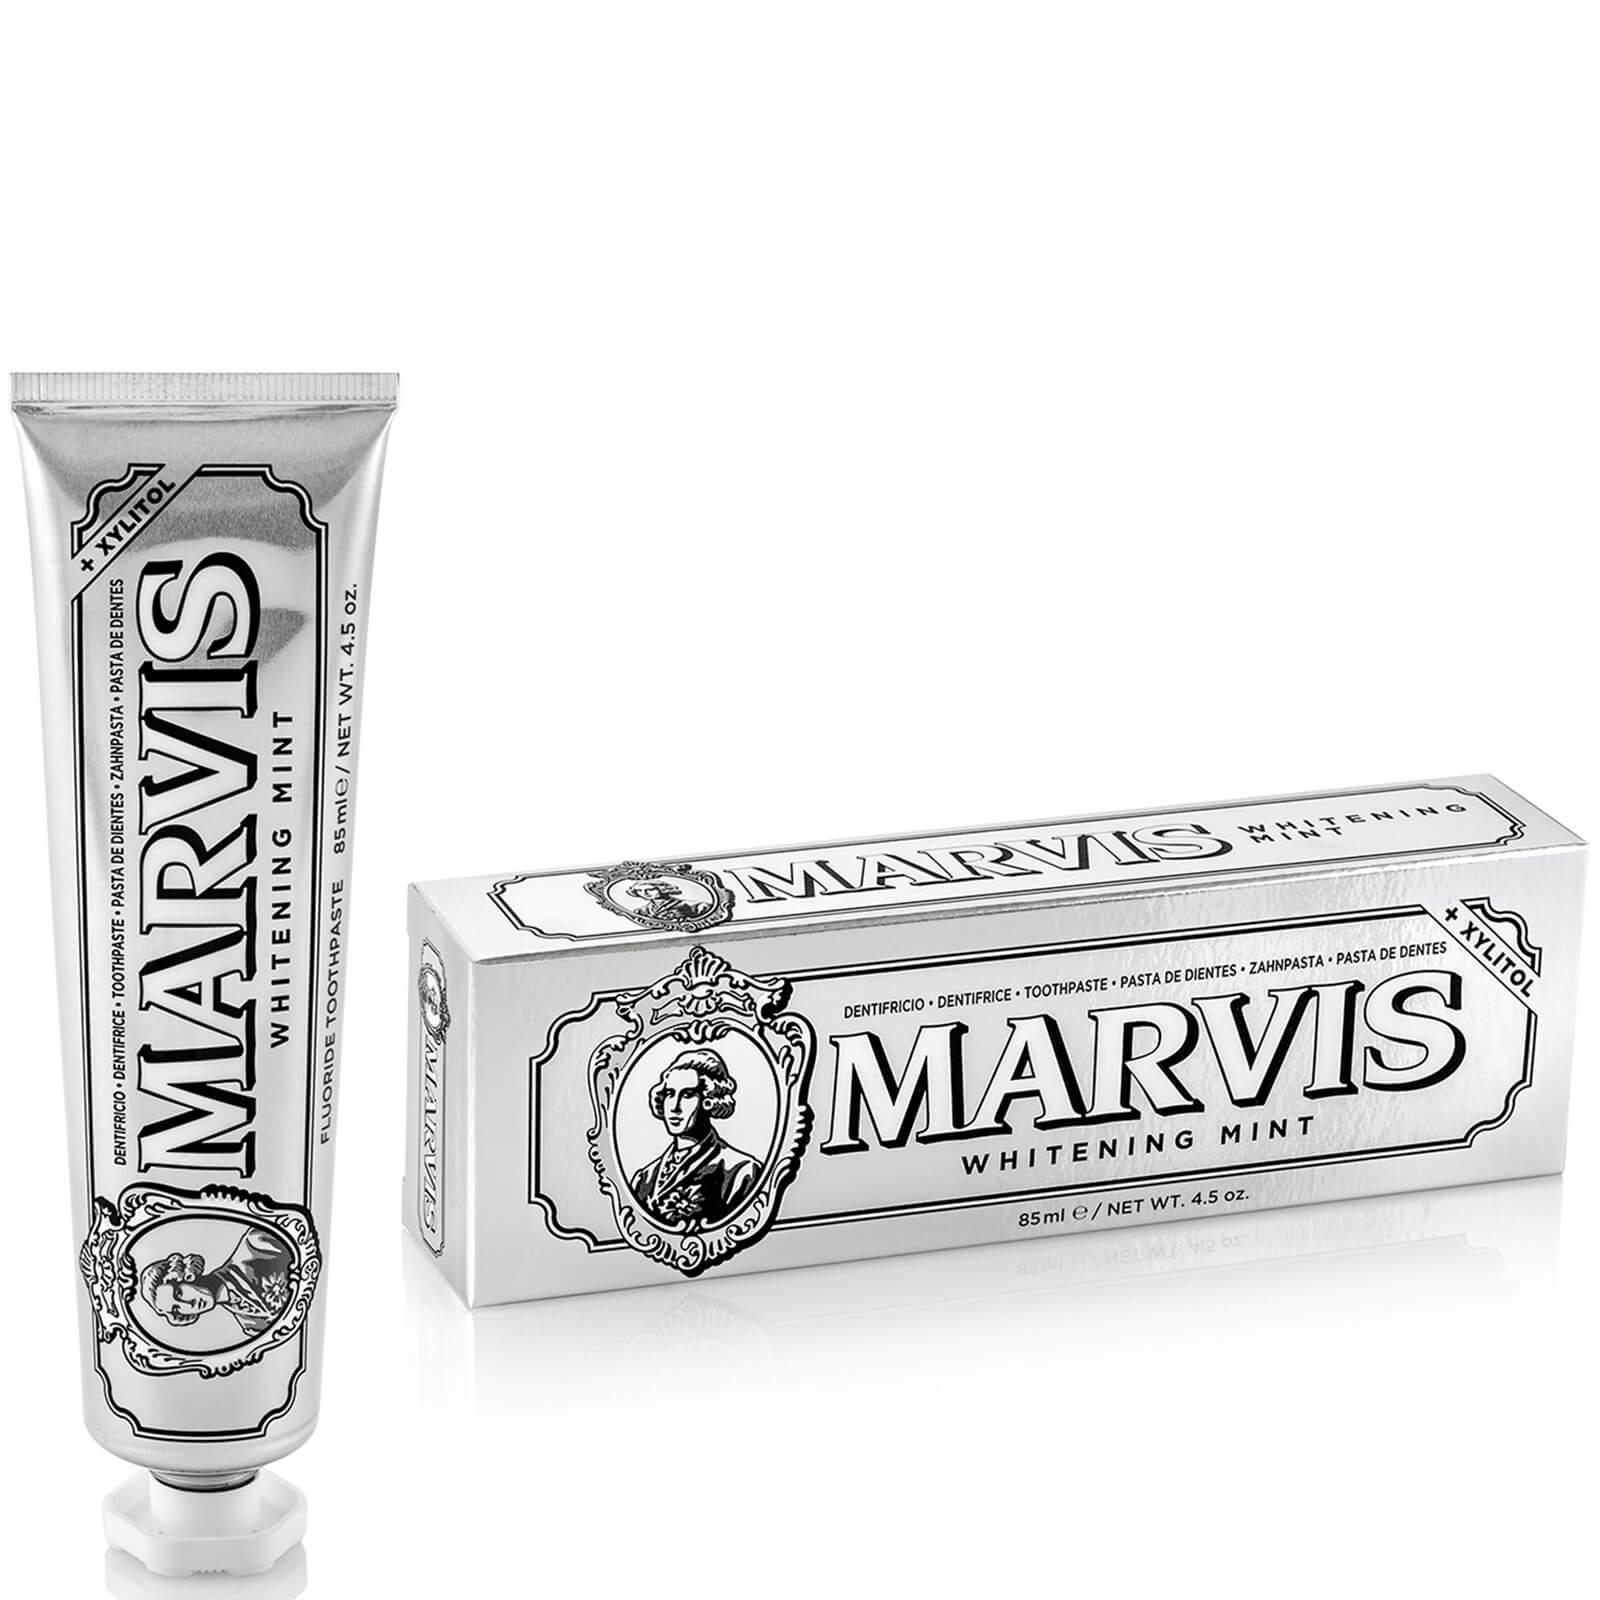 Marvis Toothpaste Whitening Mint – 85ml lookfantastic.com imagine